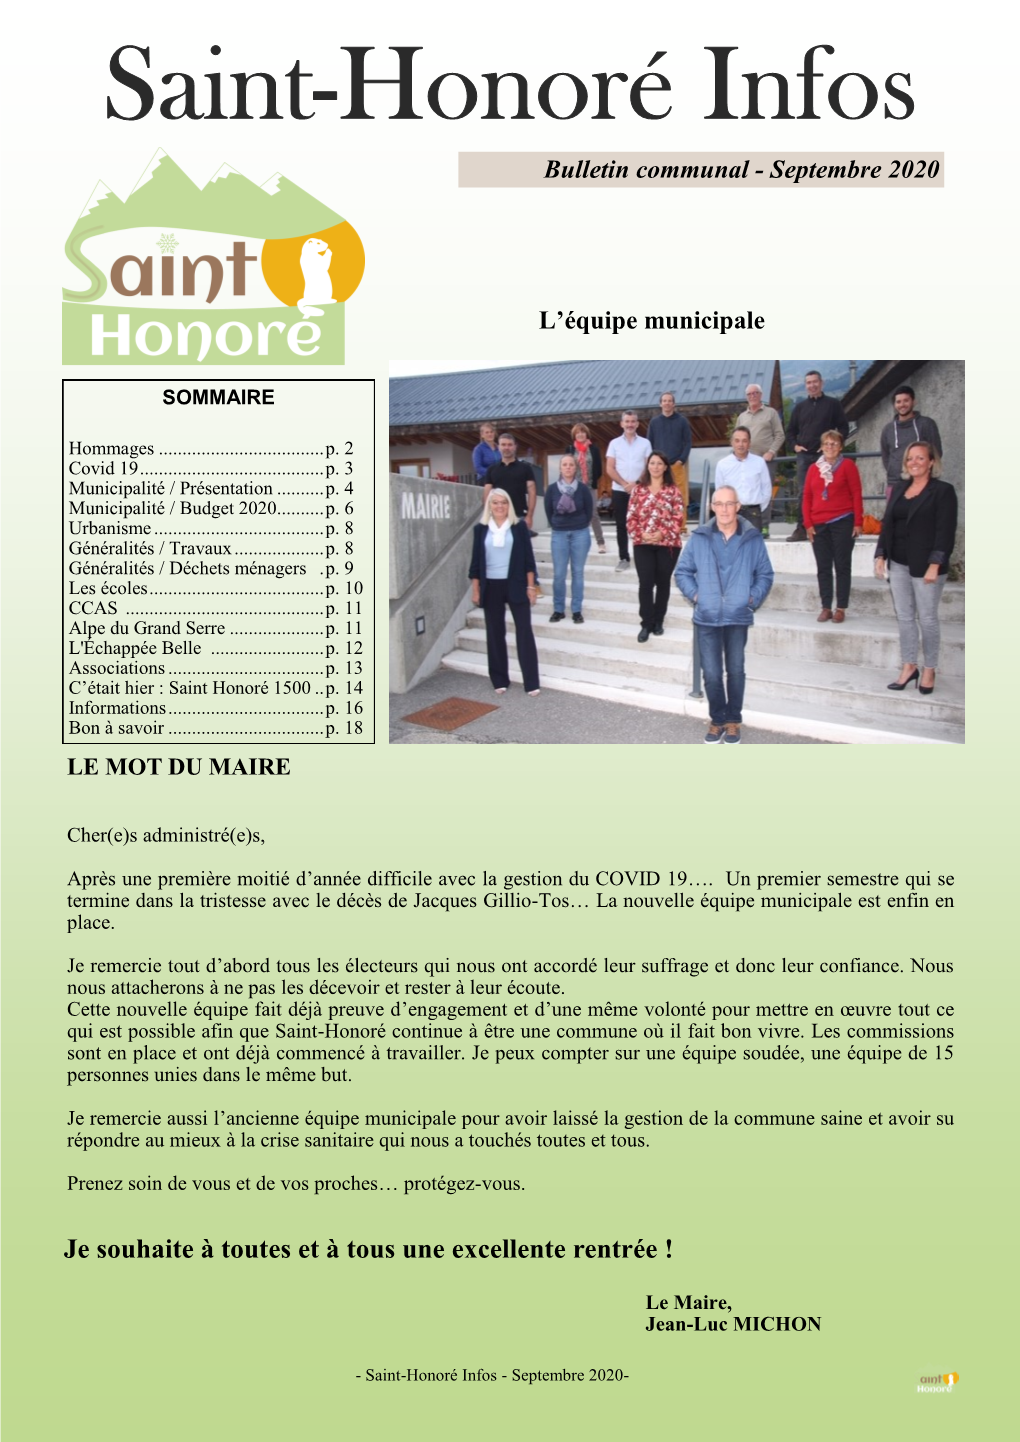 Saint-Honoré Infos Bulletin Communal - Septembre 2020